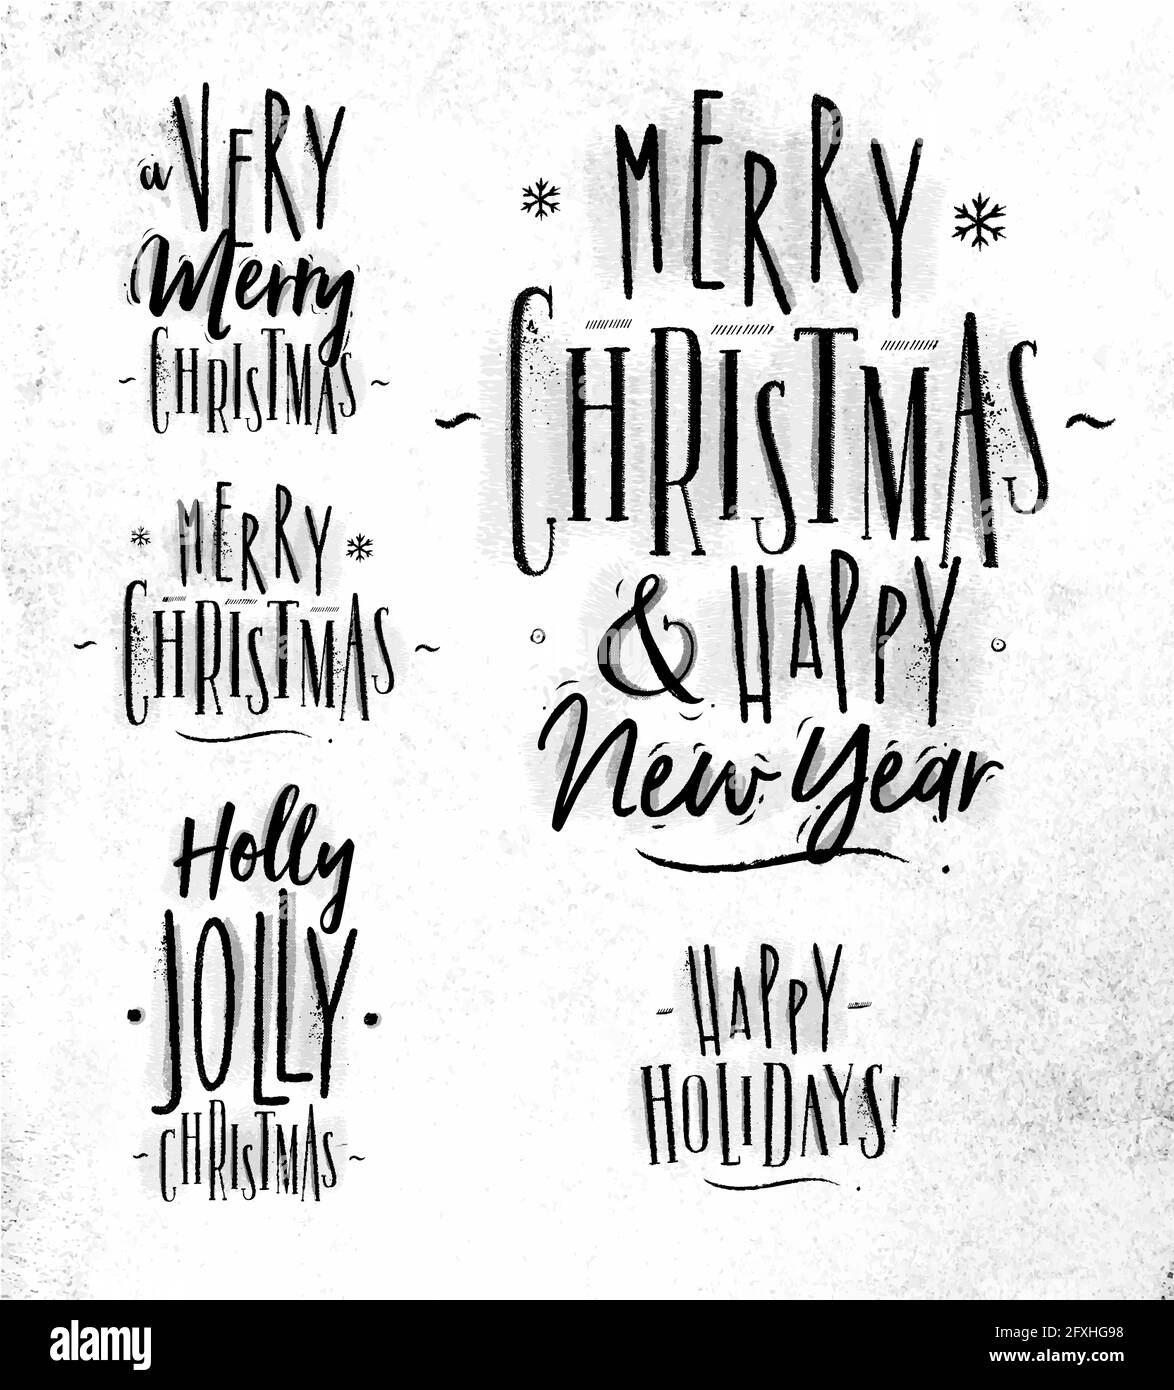 Scritta Chrictmas grafica un natale molto allegro e felice anno nuovo, Natale agile, buone feste disegno in stile retrò su carta sporca Illustrazione Vettoriale